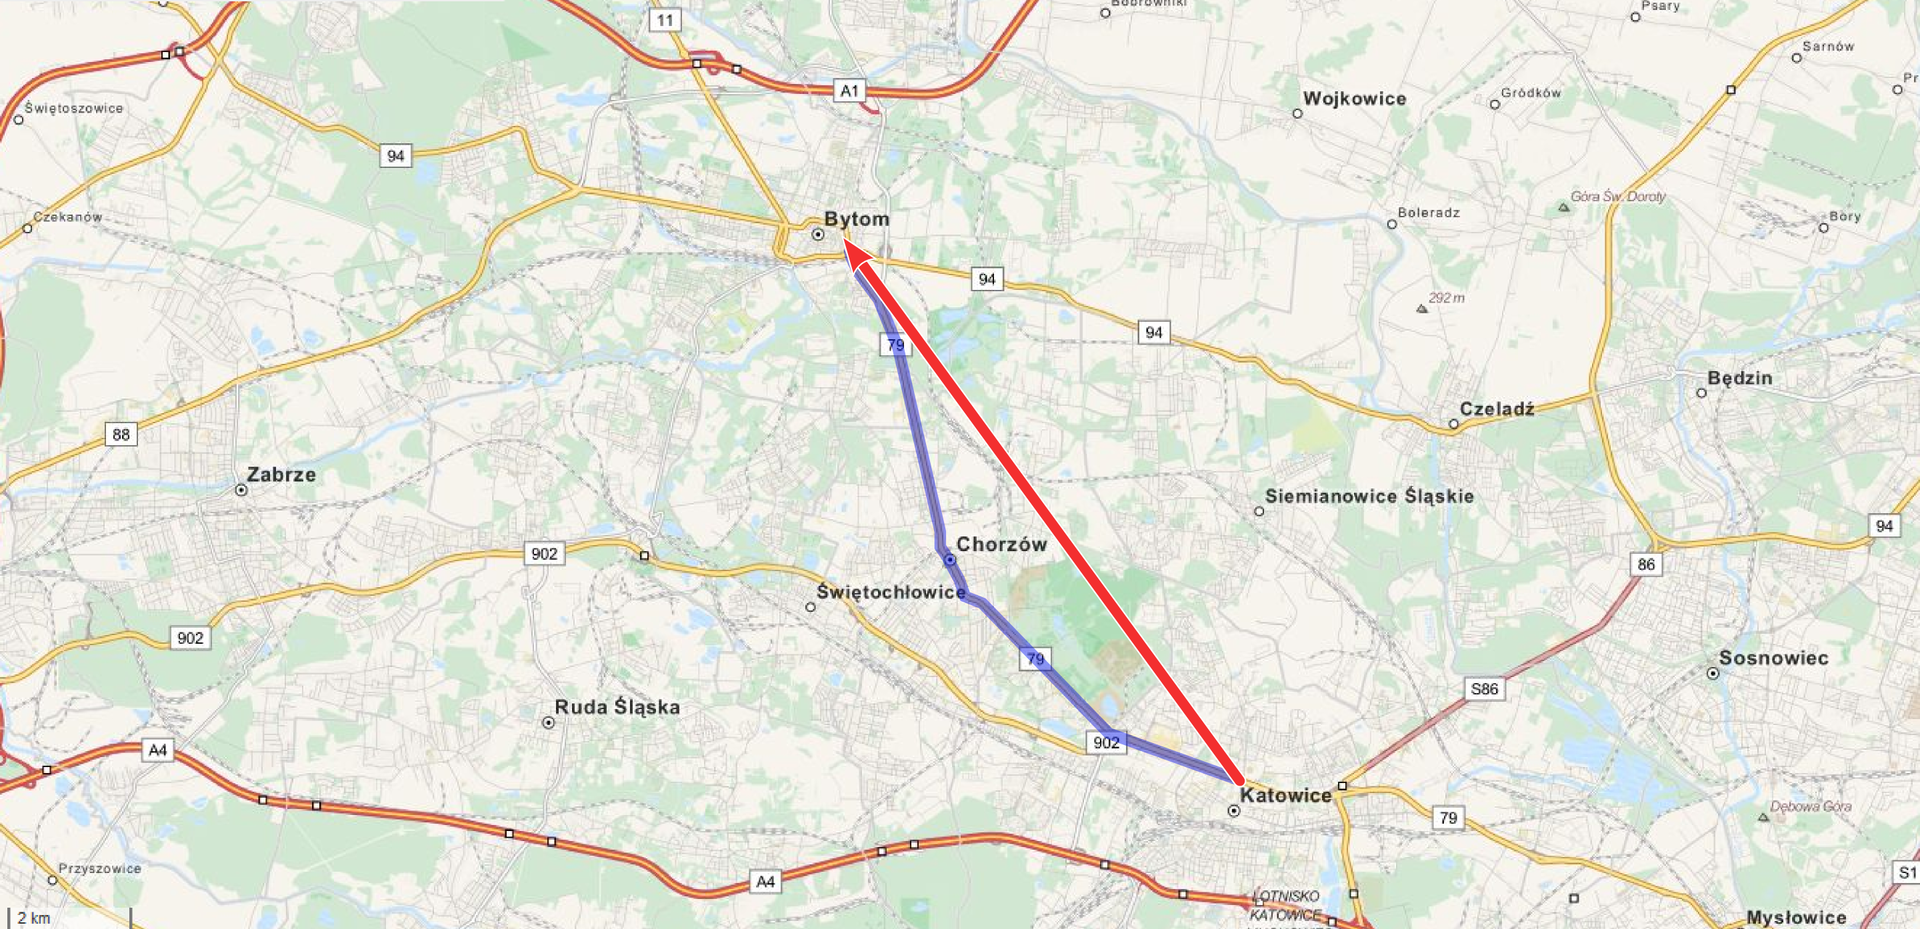 Ilustracja przedstawia fragment mapy Górnego Śląska. Na mapie zaznaczono niebieskim kolorem fragment drogi nr 79, na odcinku między Bytomiem a Katowicami. Droga ta wiedzie przez Chorzów. Katowice są na południowy wschód od Bytomia. Od Katowic do Bytomia zaznaczony jest wektor, ze zwrotem na Bytom. Ponieważ droga wiedzie lekko o łuku widać, że jest ona większa niż przemieszczenie, które liczy się w linii prostej.